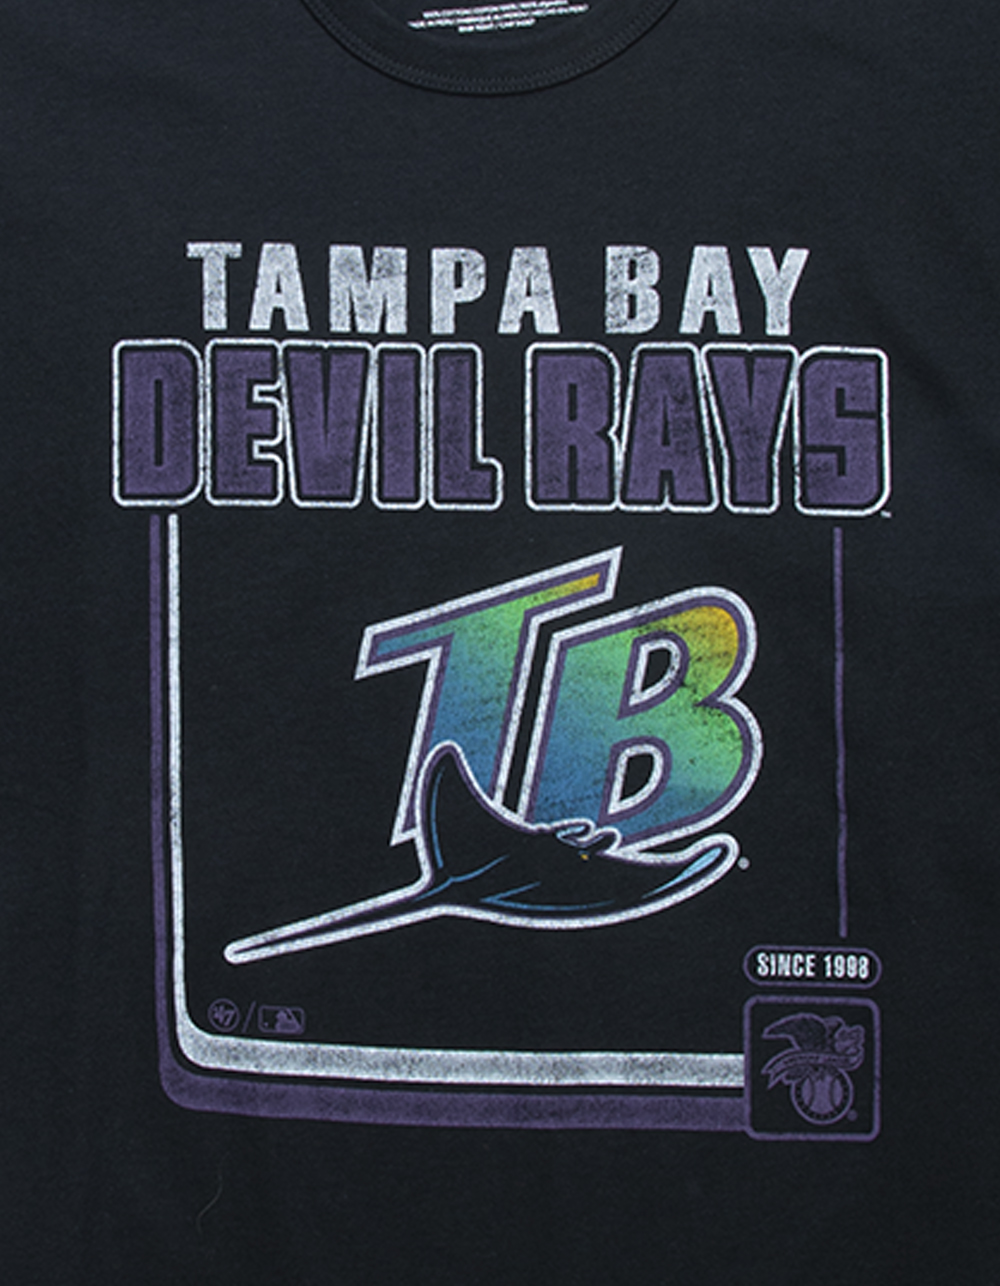 vintage devil rays jersey